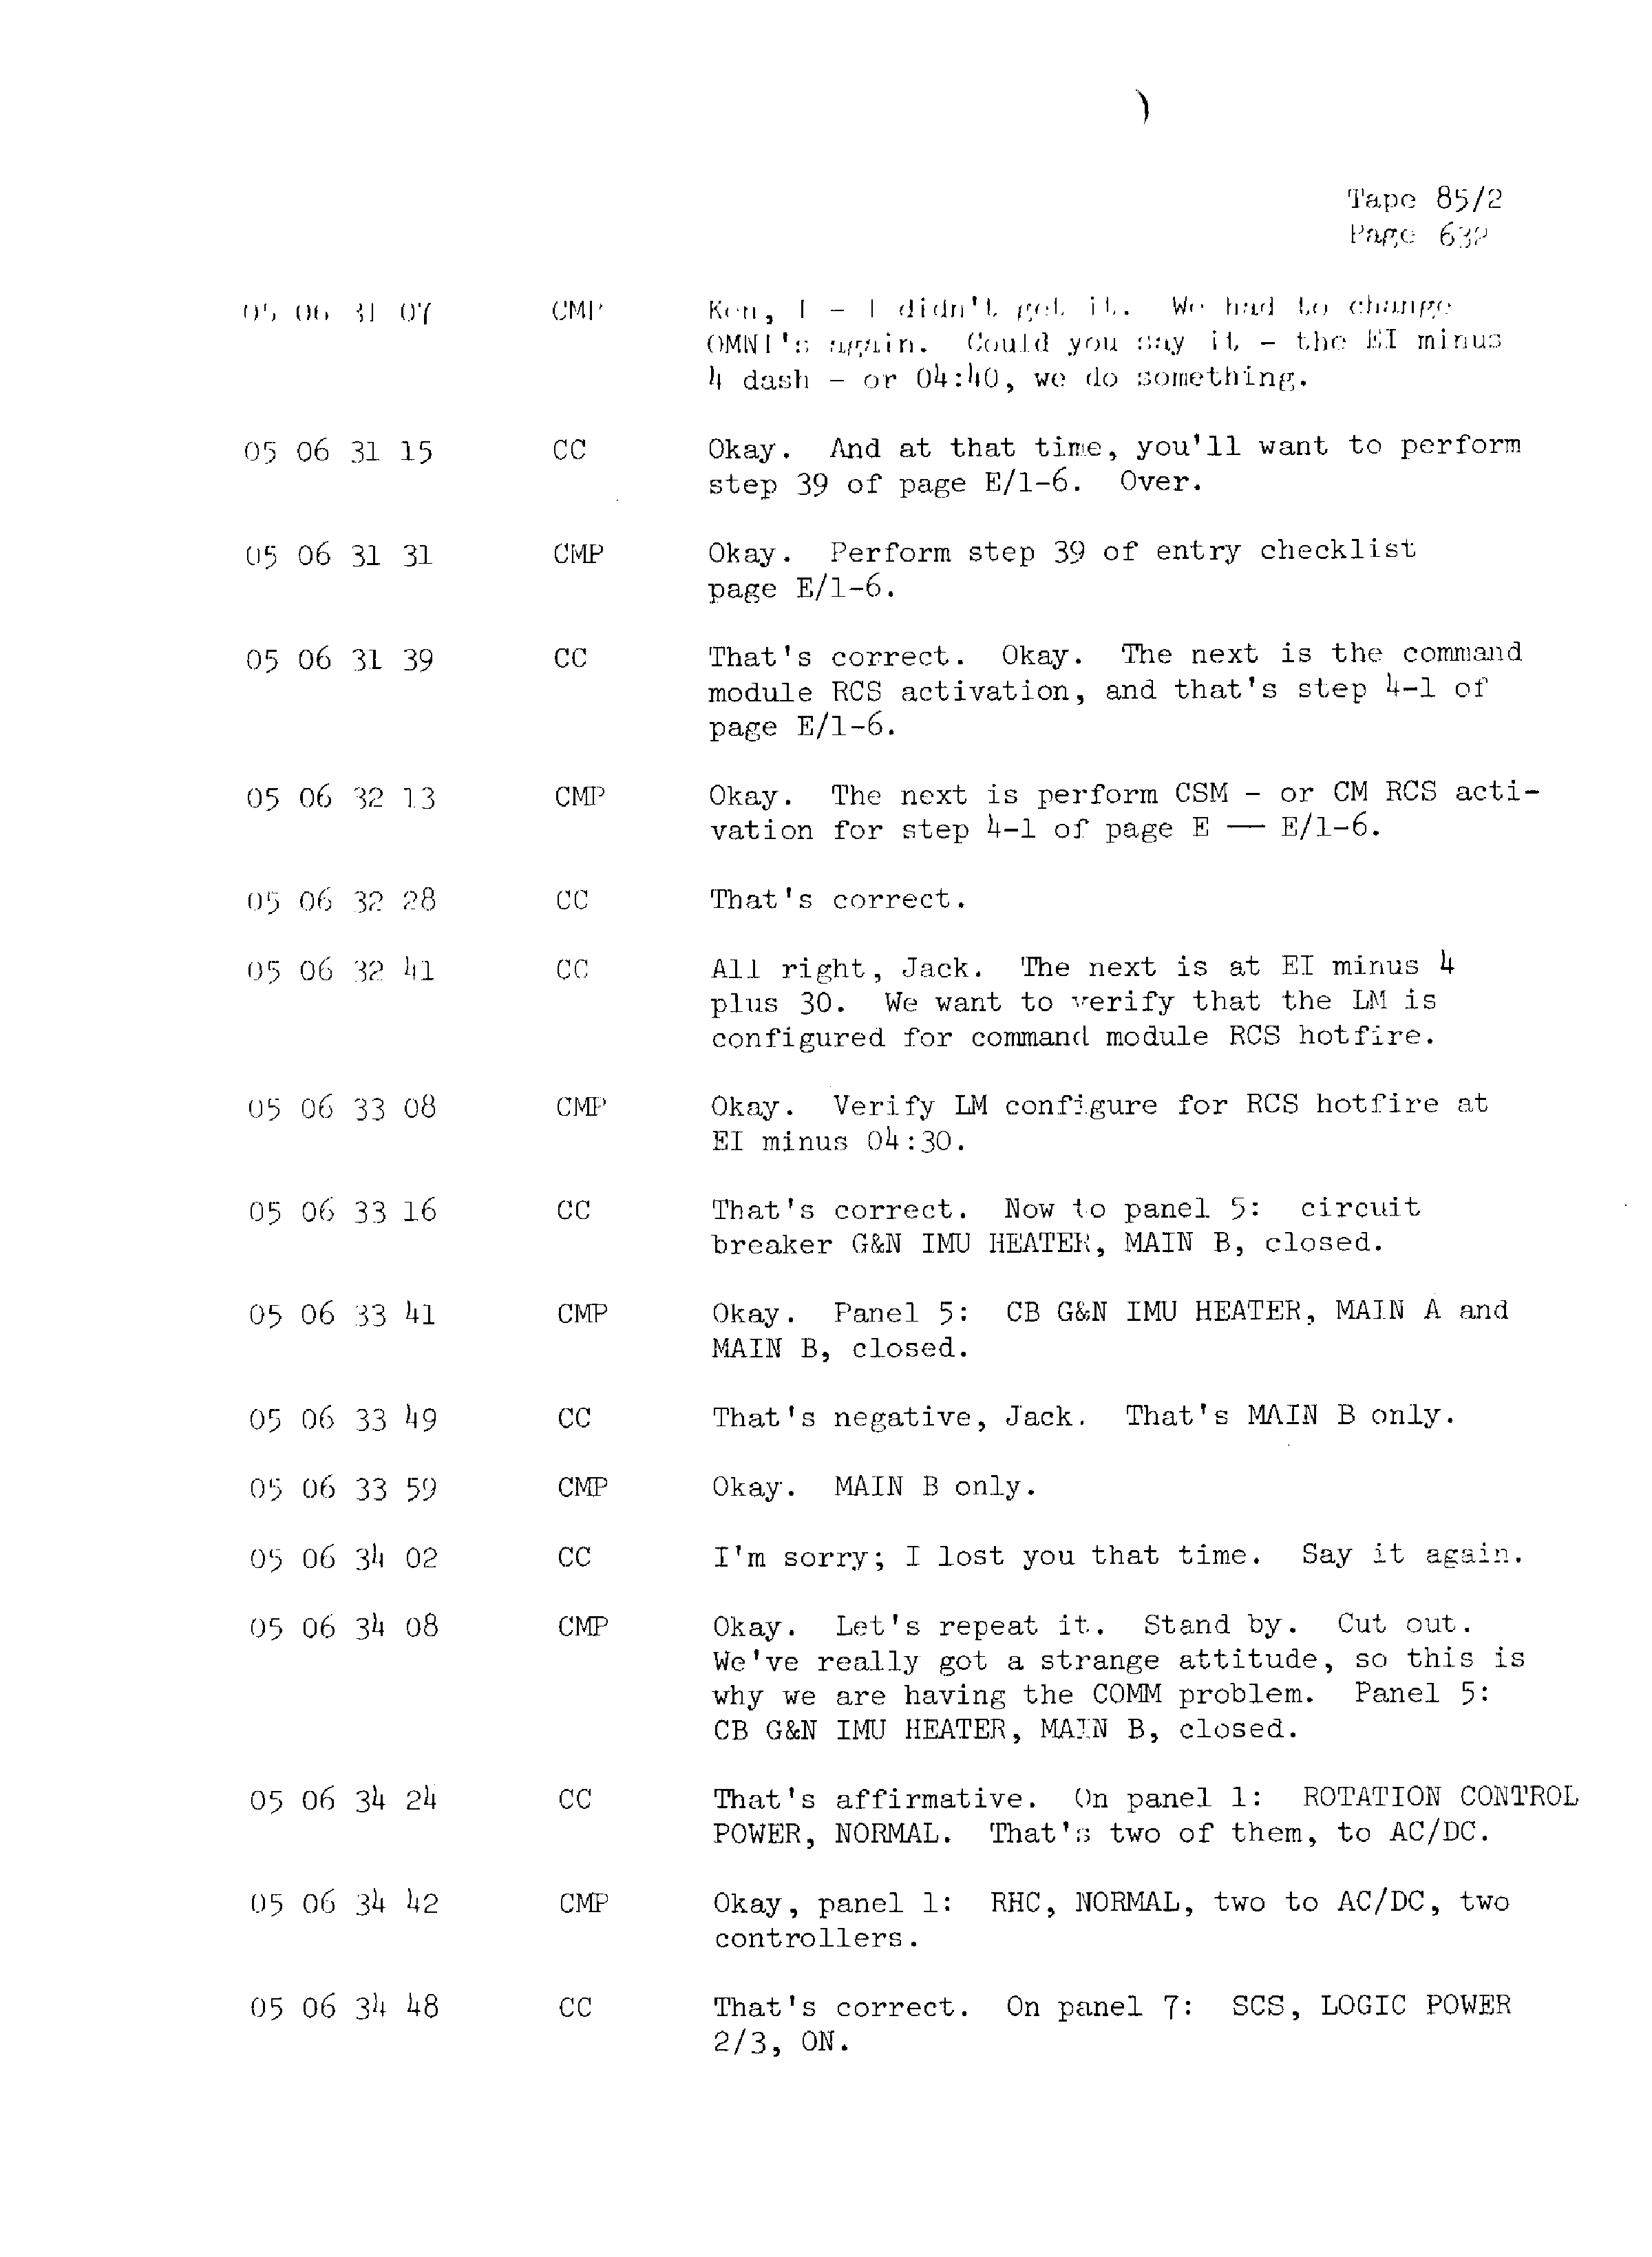 Page 639 of Apollo 13’s original transcript